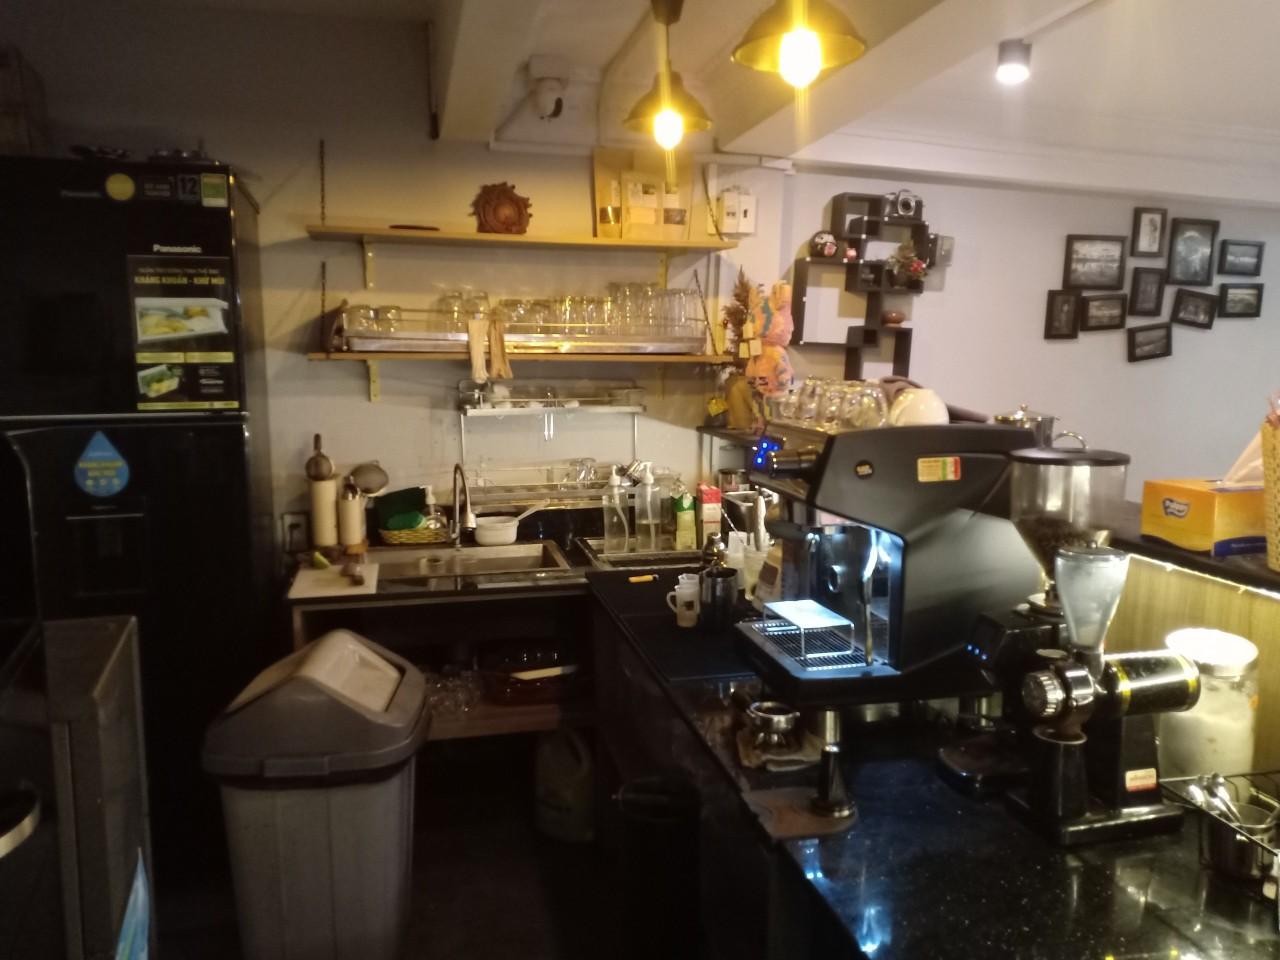 Sang quán cafe MB 1 TRỆT 1 LẦU Phạm Văn Đồng ngang 10 mét hơn